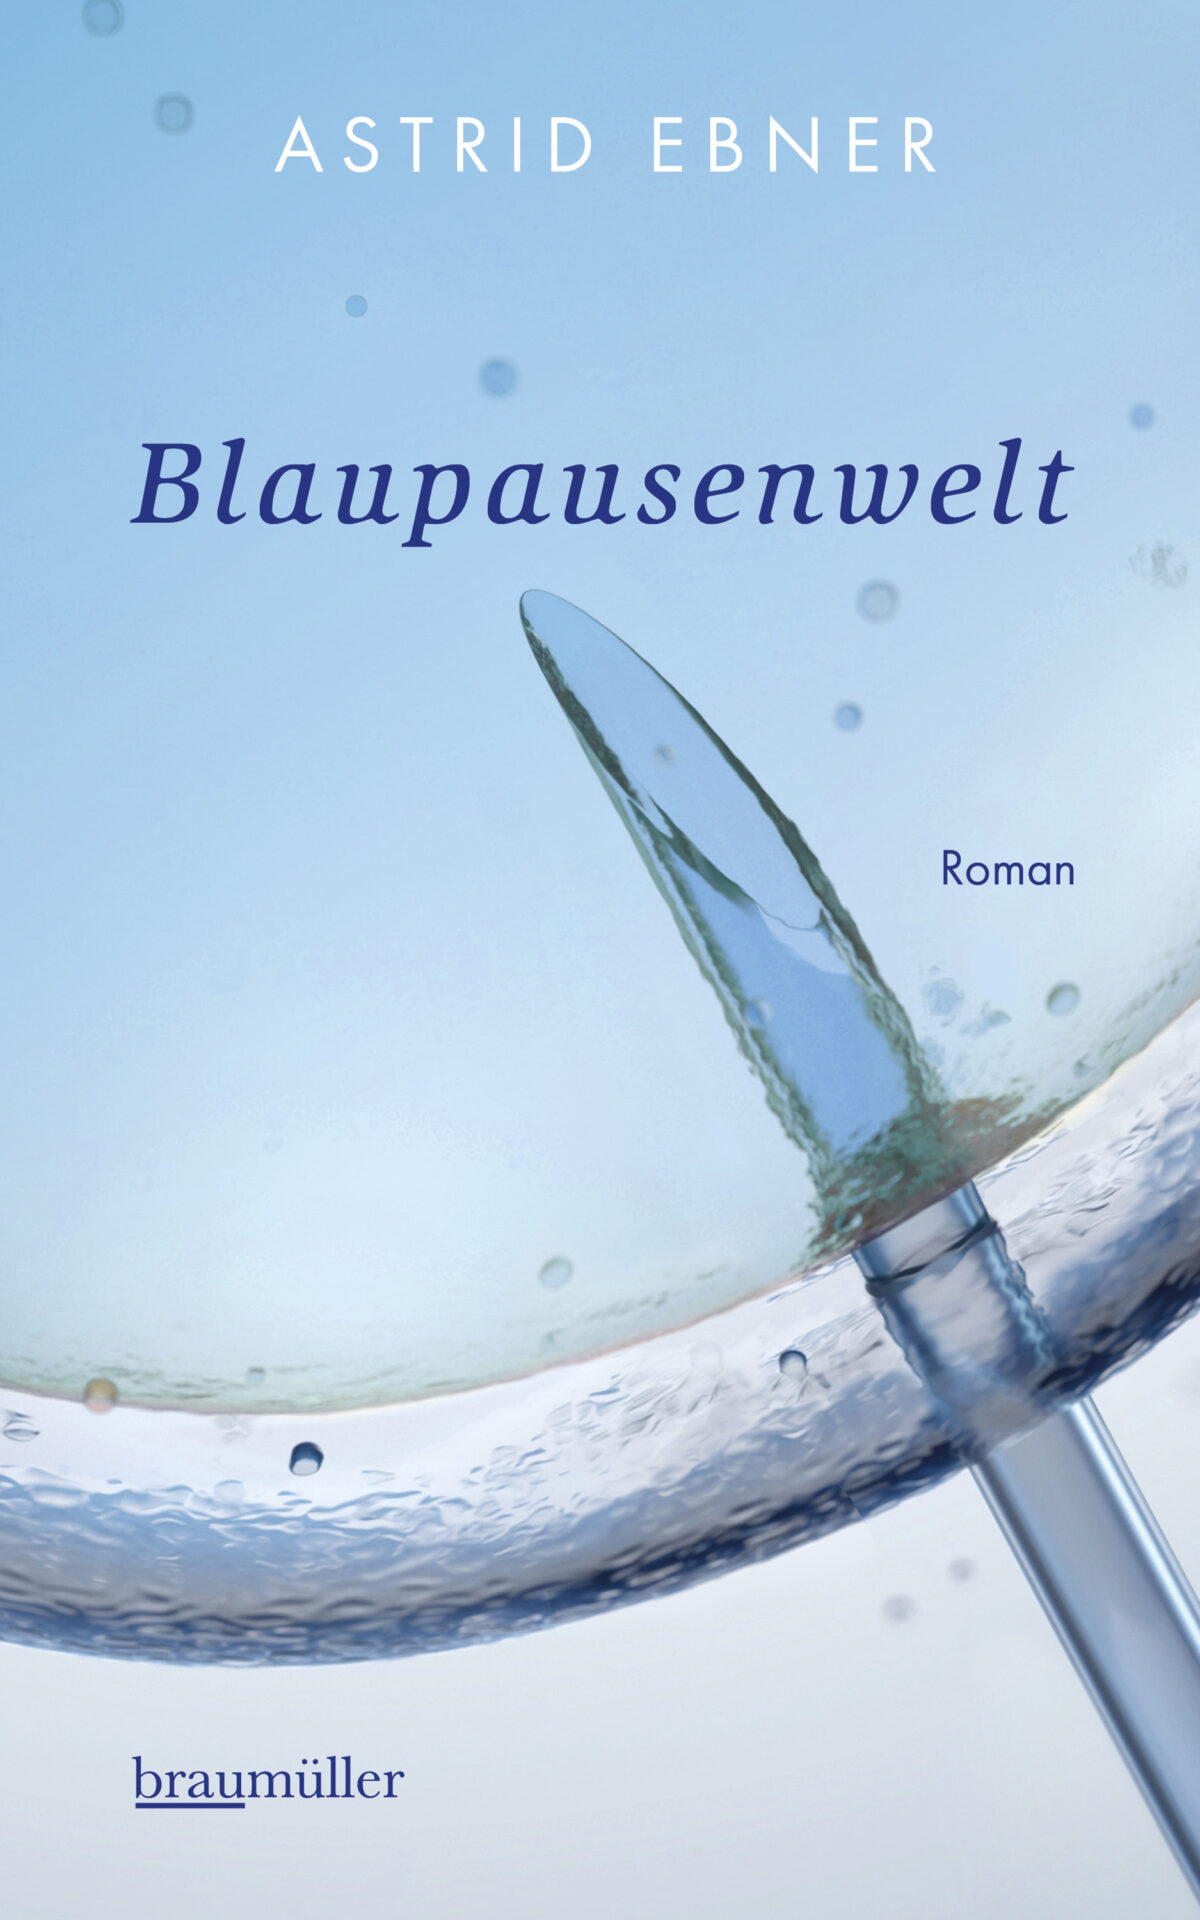 Cover Astrid Ebner Blaupausenwelt, © braumüller 2023